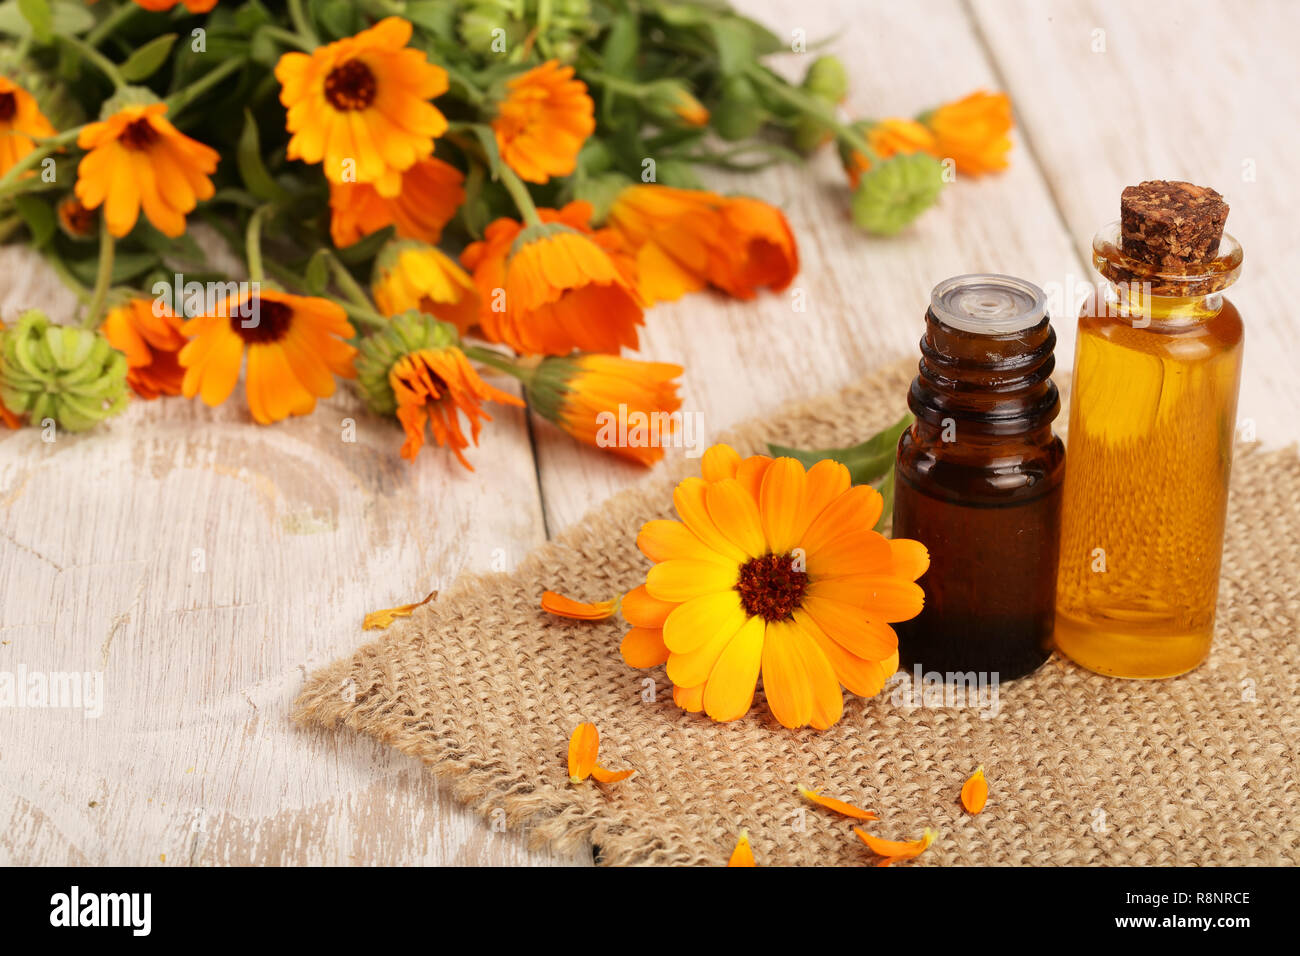 Aromatherapie ätherisches Öl mit frischen Ringelblume Blumen auf weißem  Holz- Hintergrund. Calendula Öl Stockfotografie - Alamy